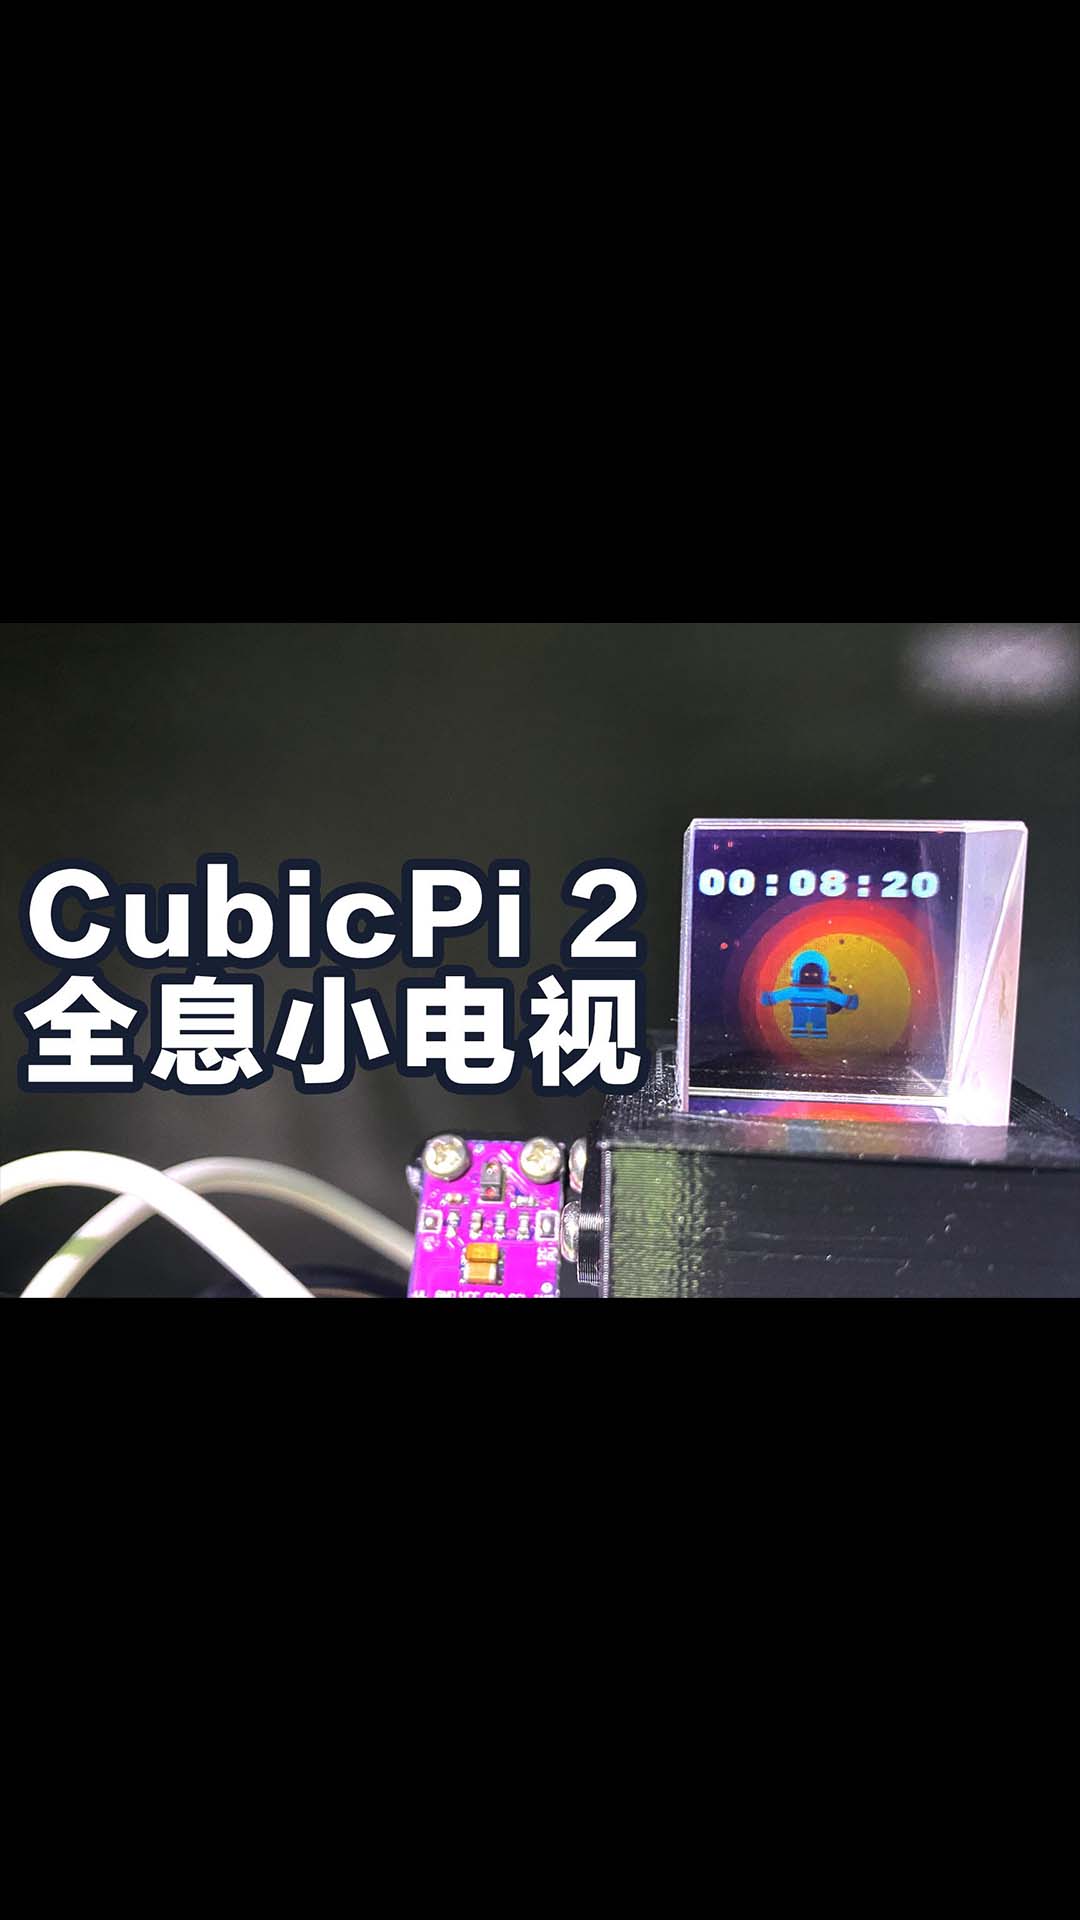 土豪版伪全息小电视CubicPi 2树莓派 APDS-9960 ips lcd DIY多功能桌面小电